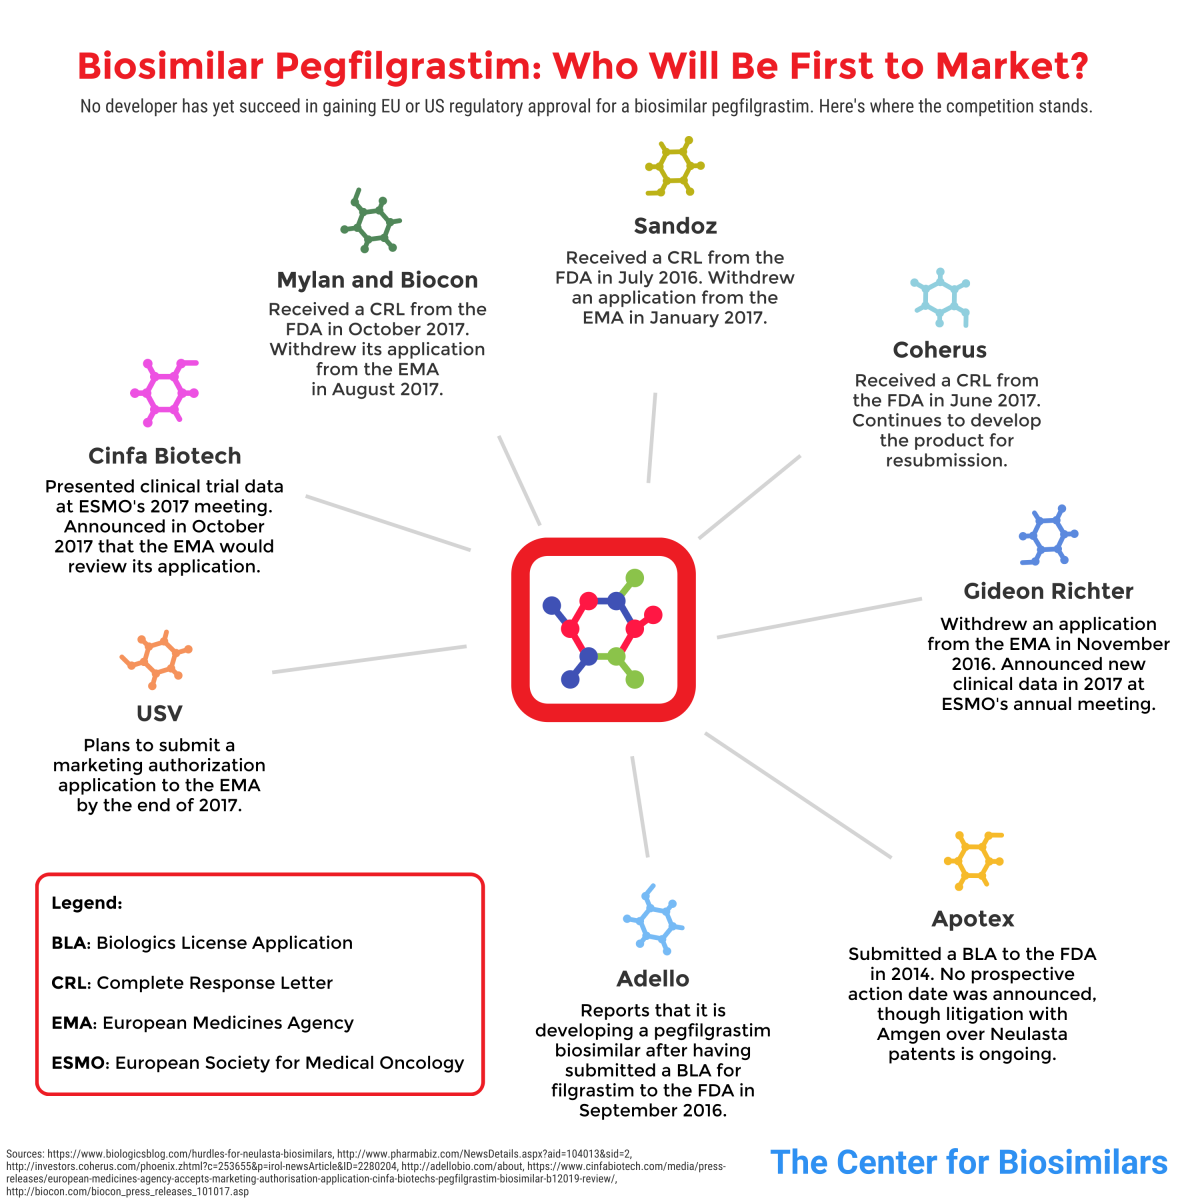 infographic detailing manufacturers developing pegfilgrastim (Neulasta) biosimilar products.